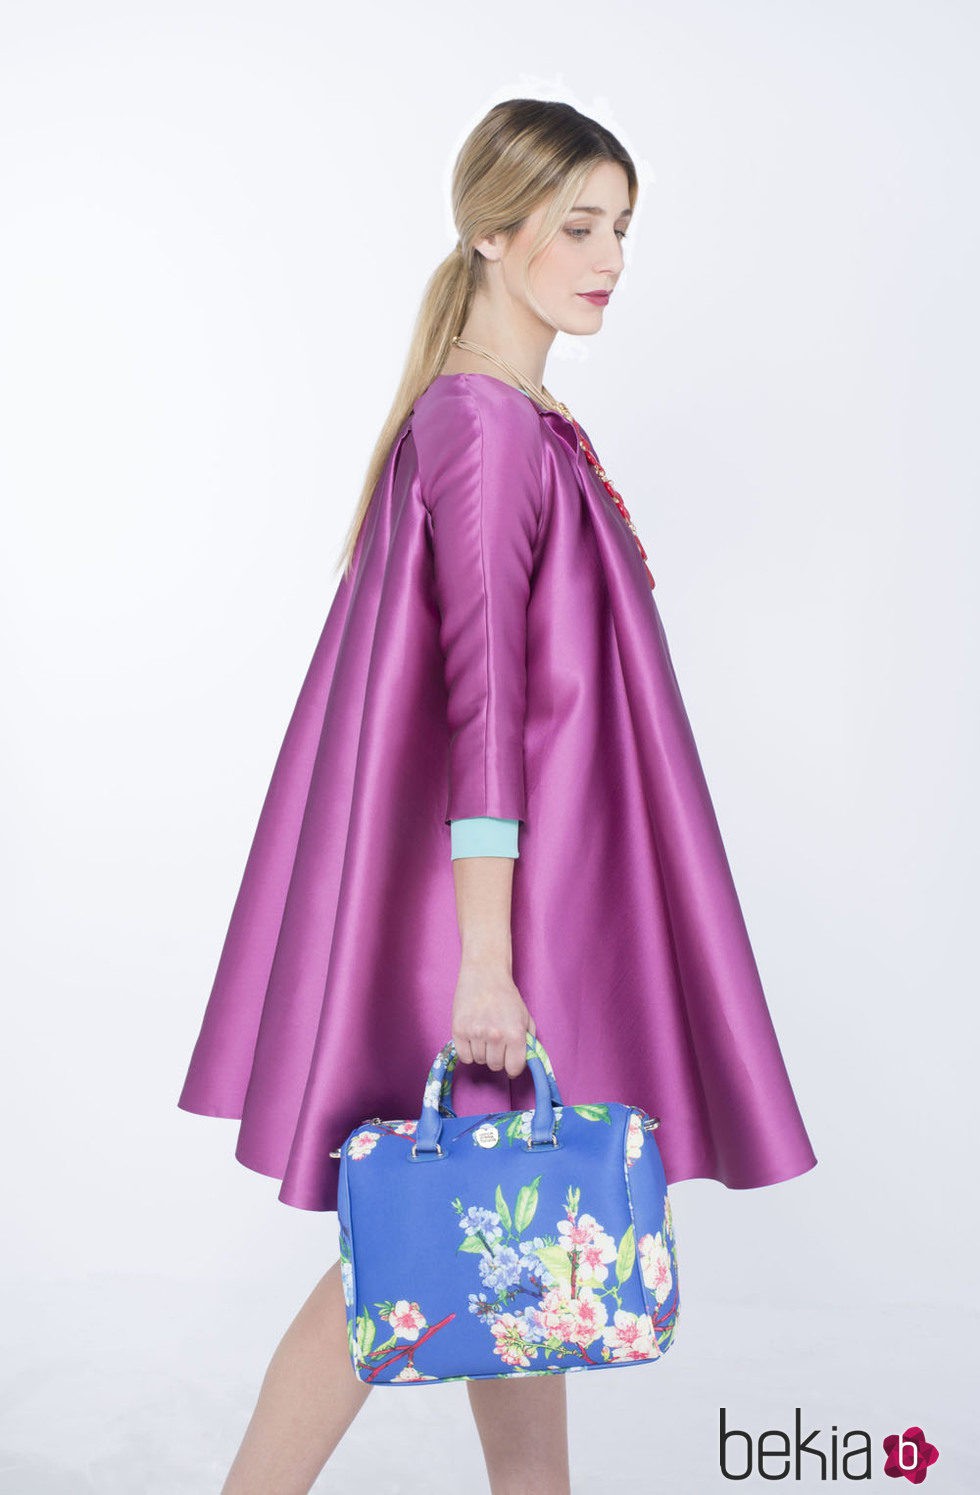 Bolso azul con flores de la colección de verano 2015 de Chic Sympatique